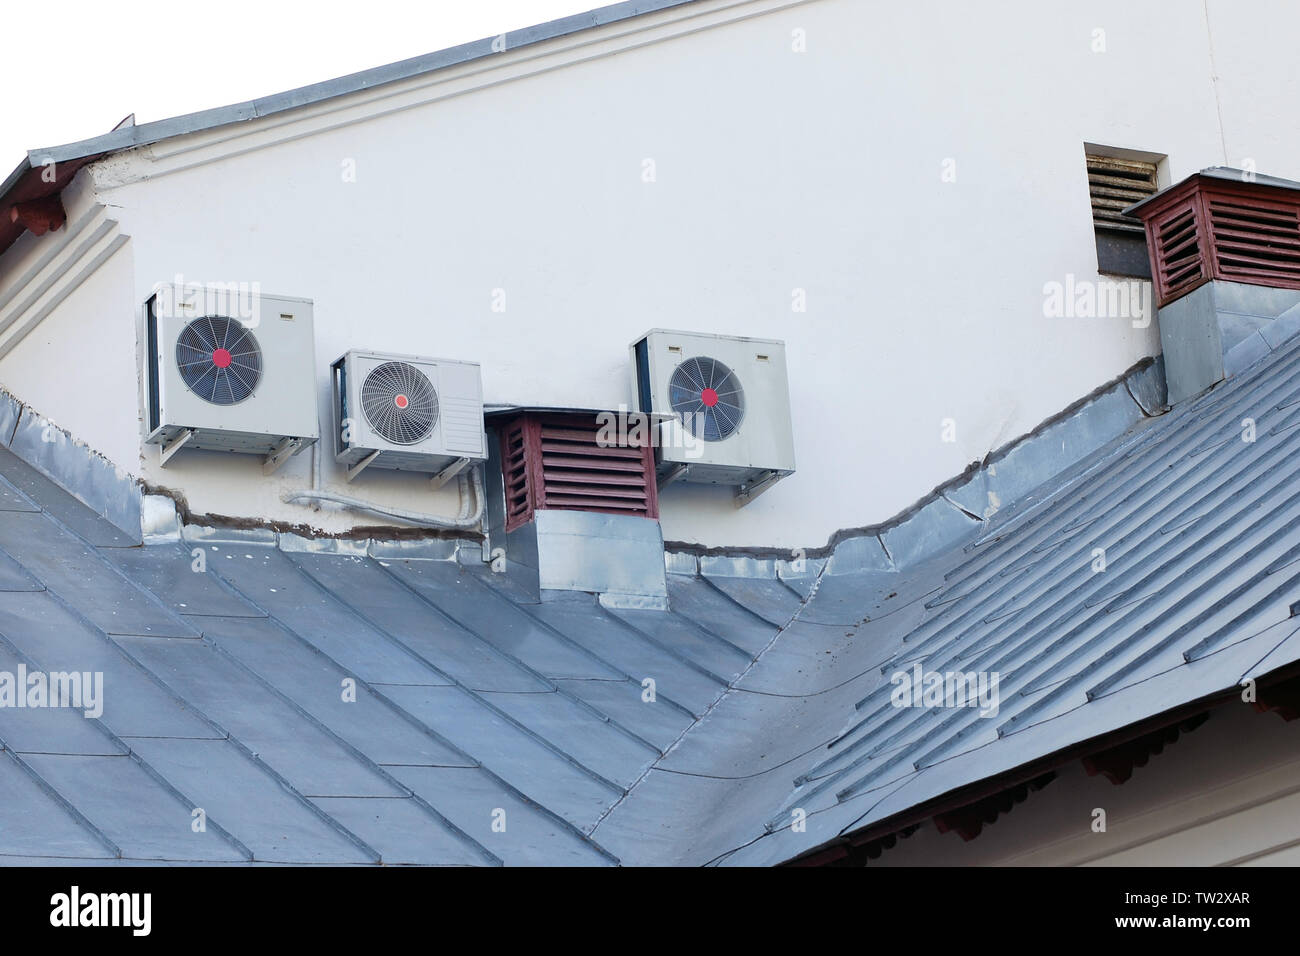 Dach auf Geschuppt Haus Dachentlüftung Stockfotografie - Alamy